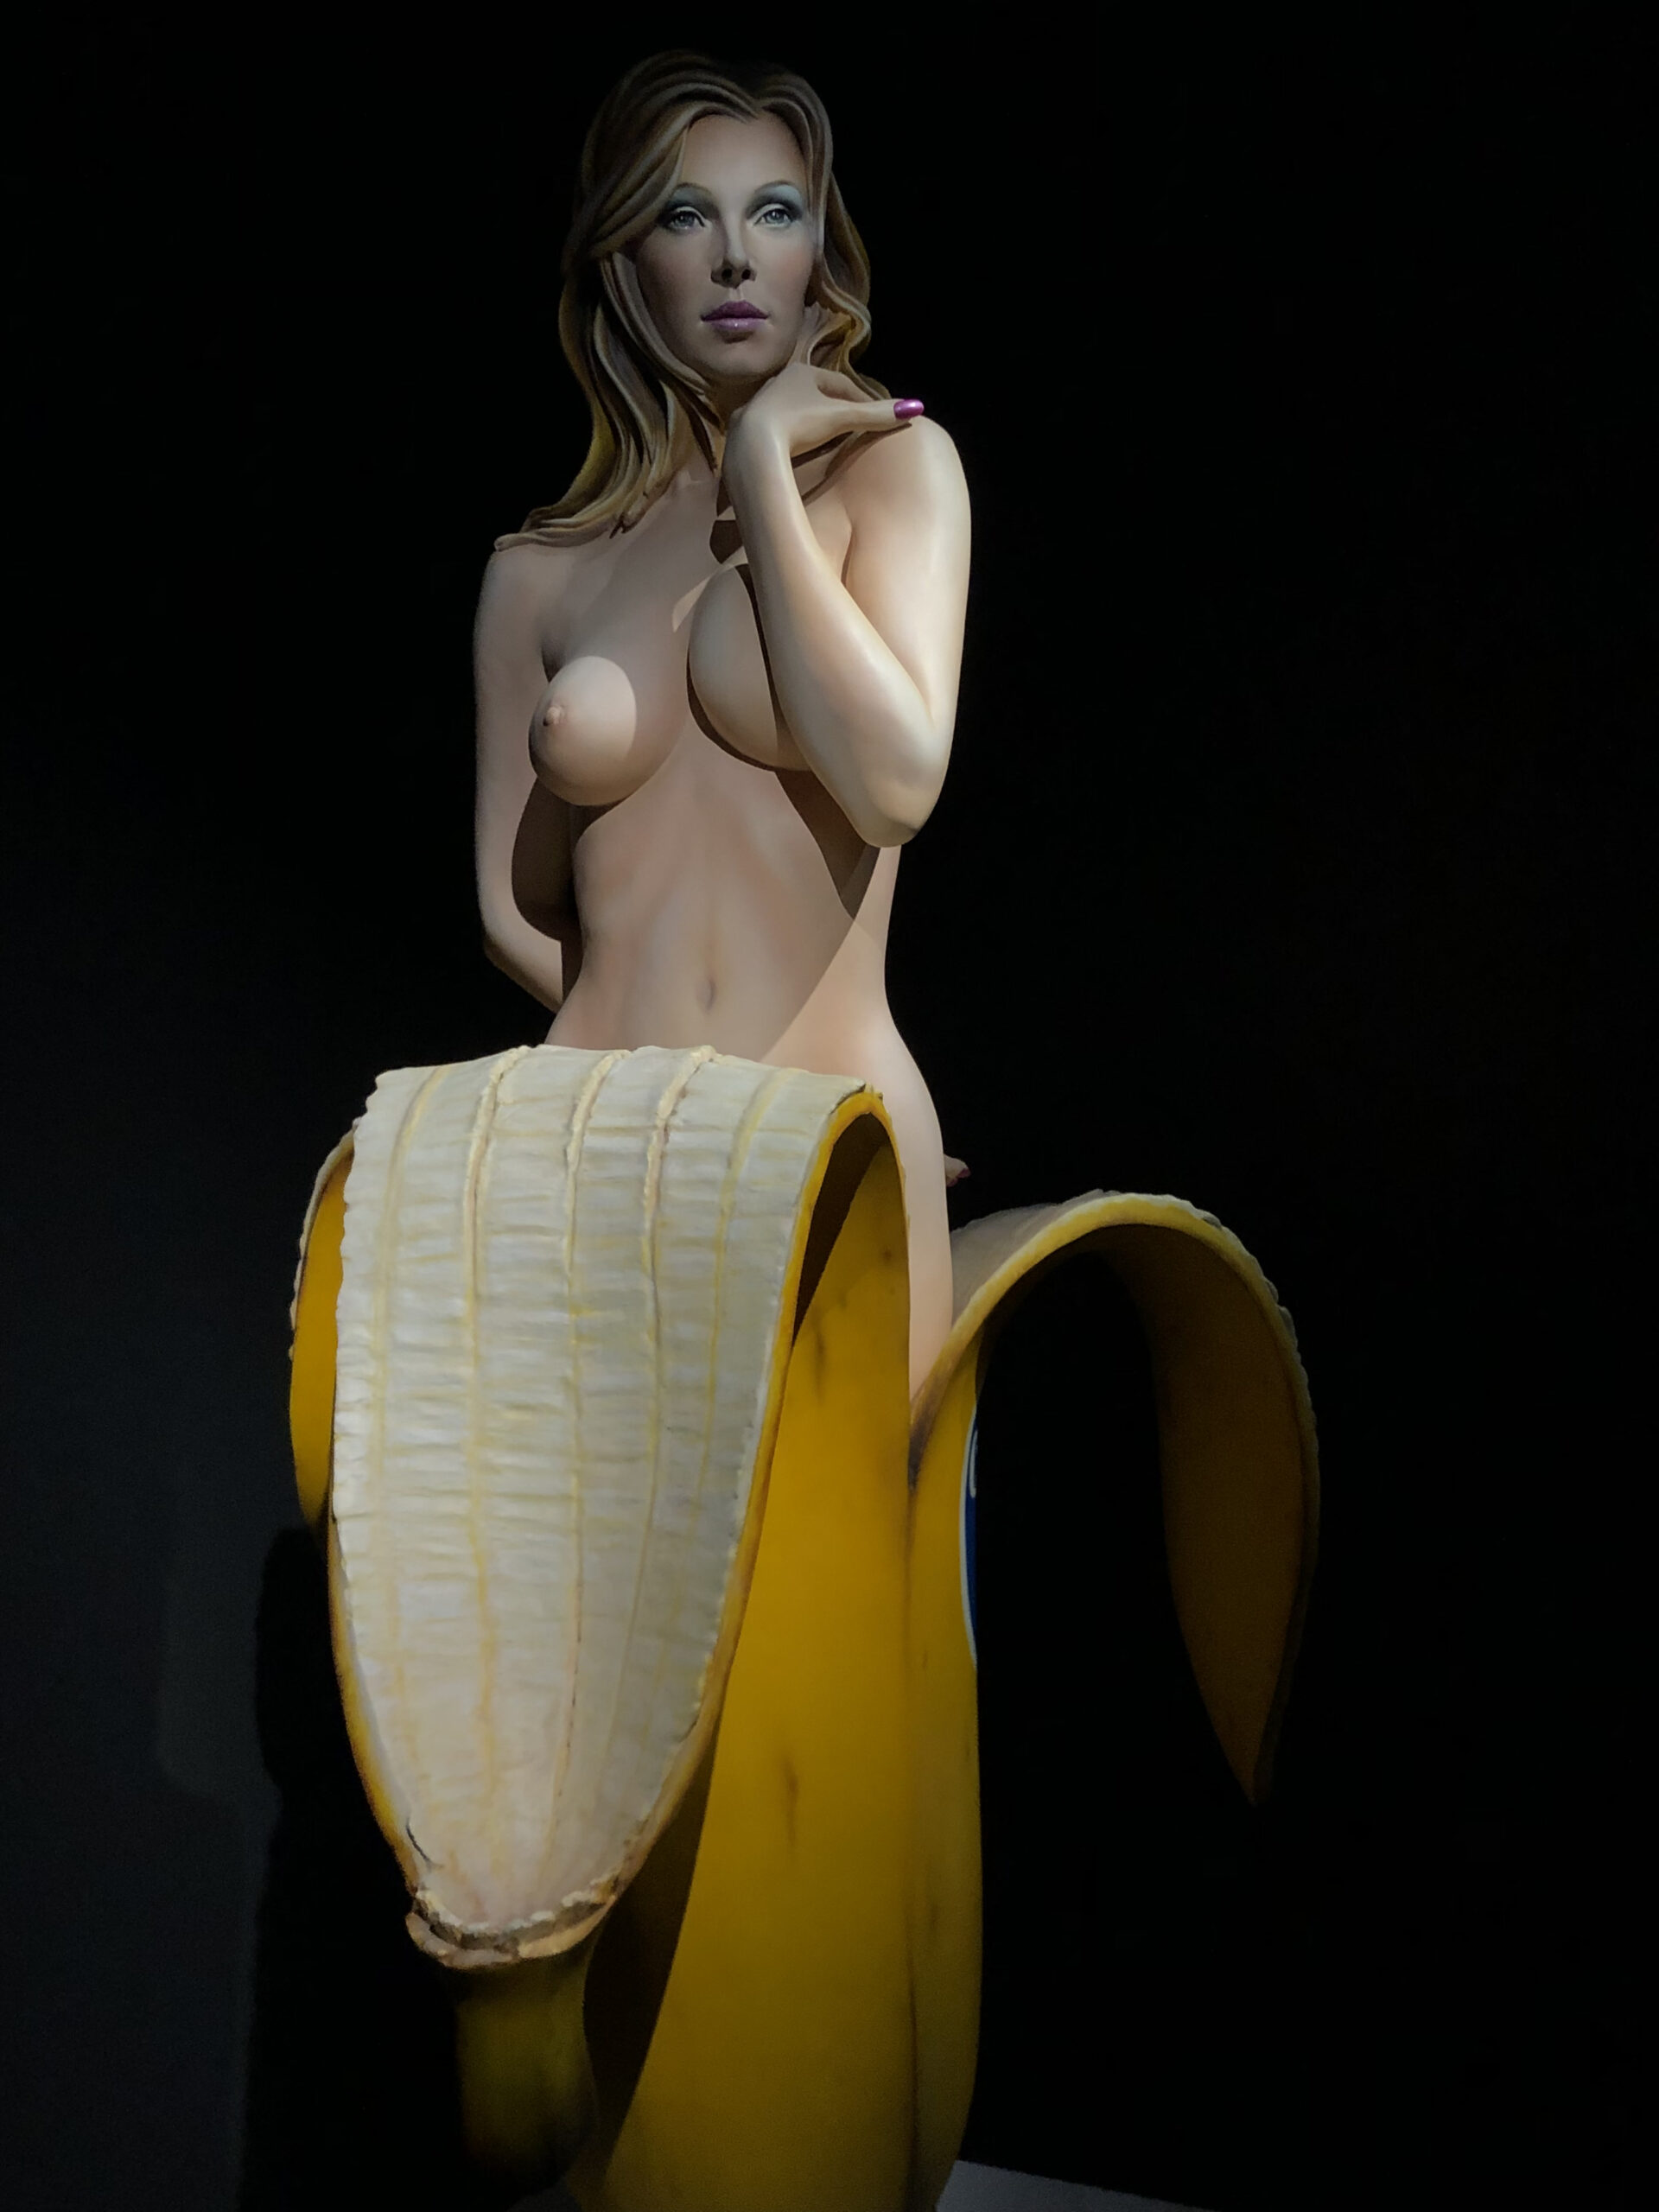 Mel Ramos (1935-2018), Chiquita Banana, 2007. Résine synthétique polychrome, 170 x 110 x 110 cm, édition 1/6. Vienne, galerie Ernst Hilger. © OPM